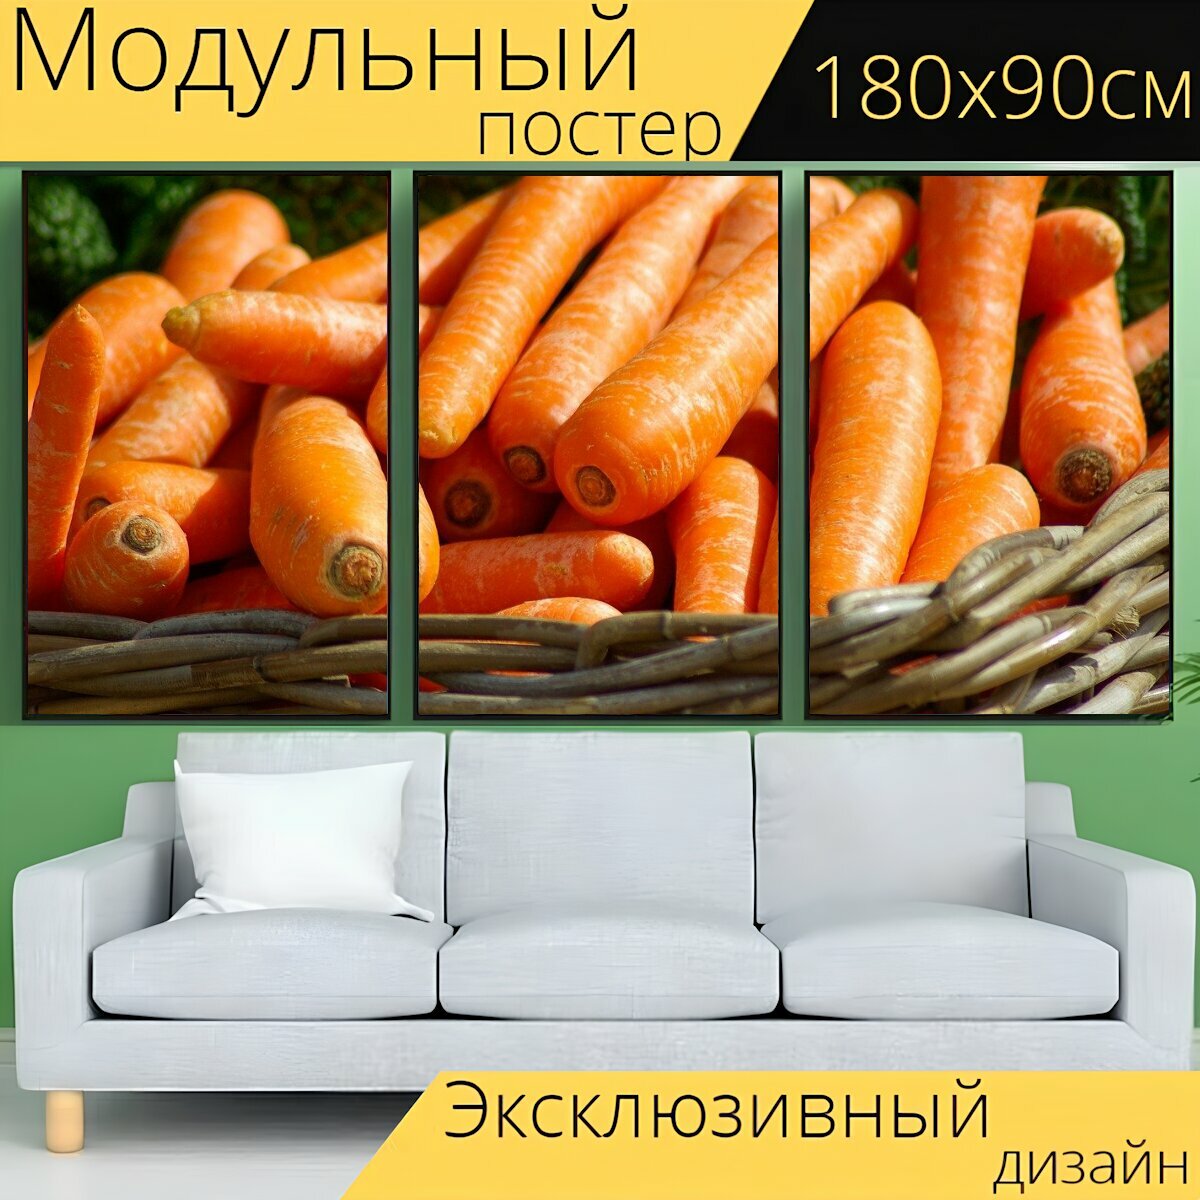 Модульный постер "Морковь, корзина, овощи" 180 x 90 см. для интерьера